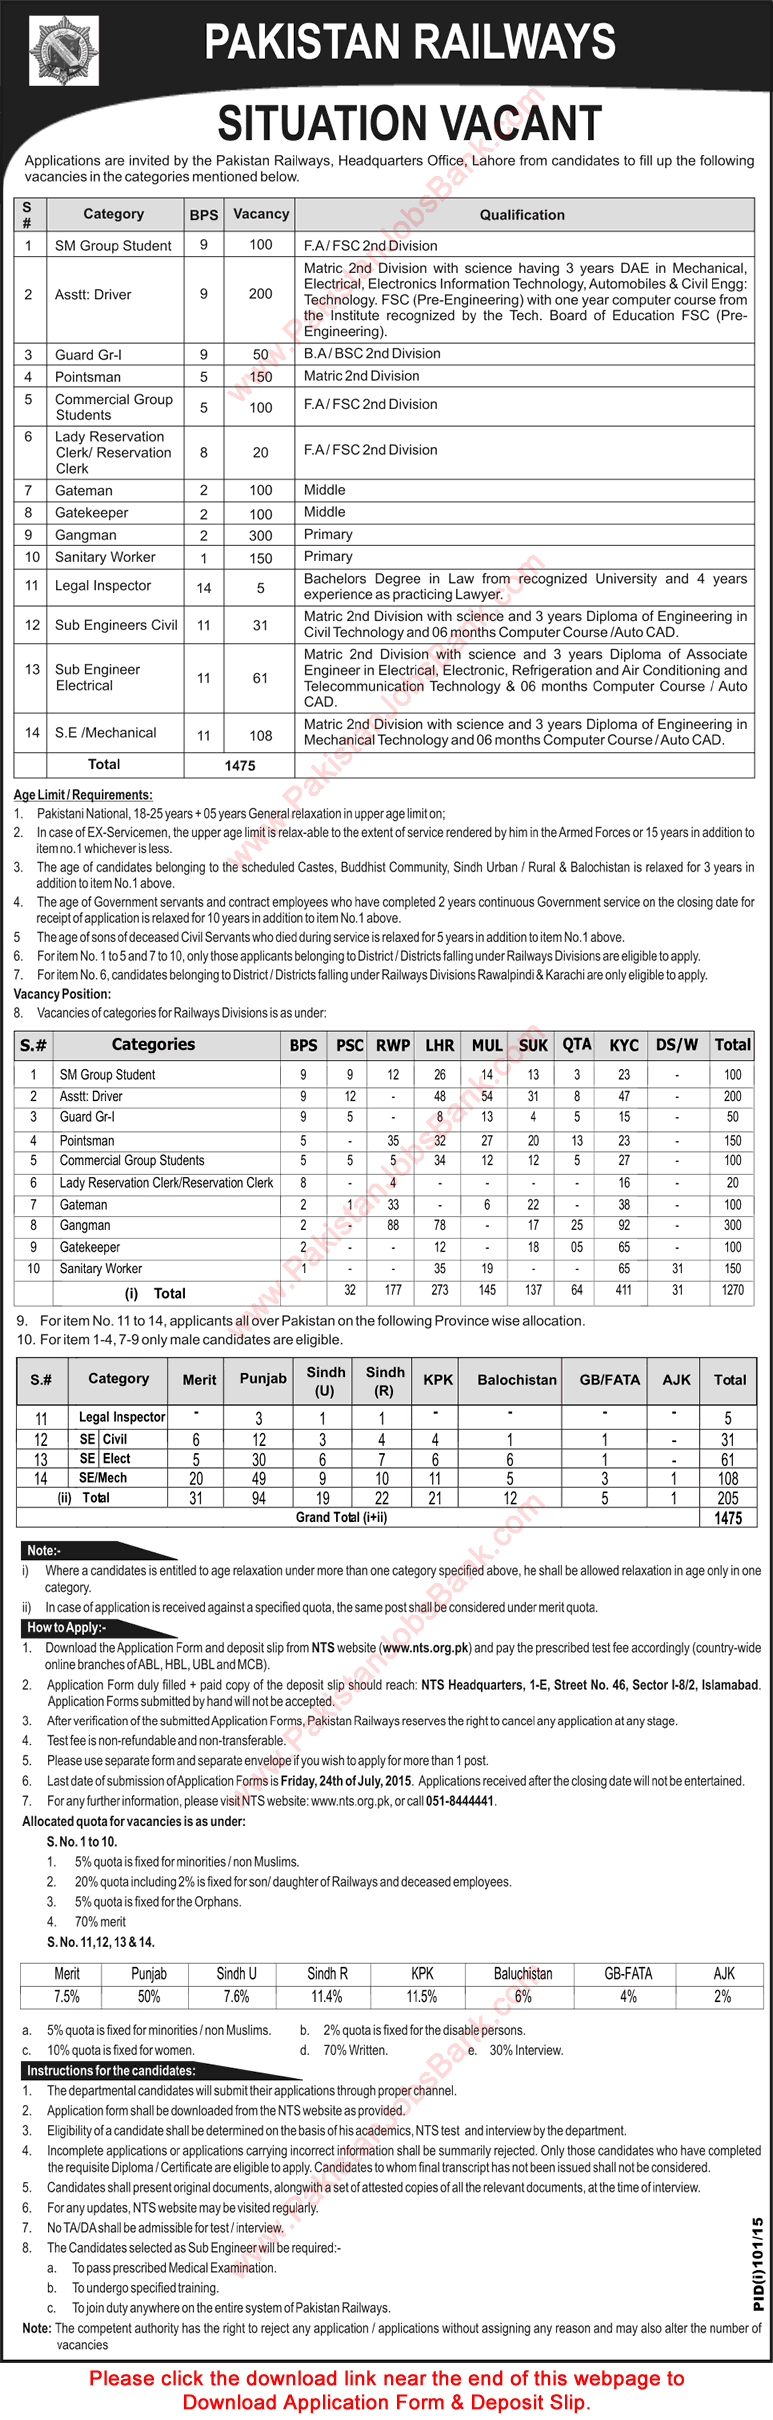 Vacancies in Pakistan Railways 2015